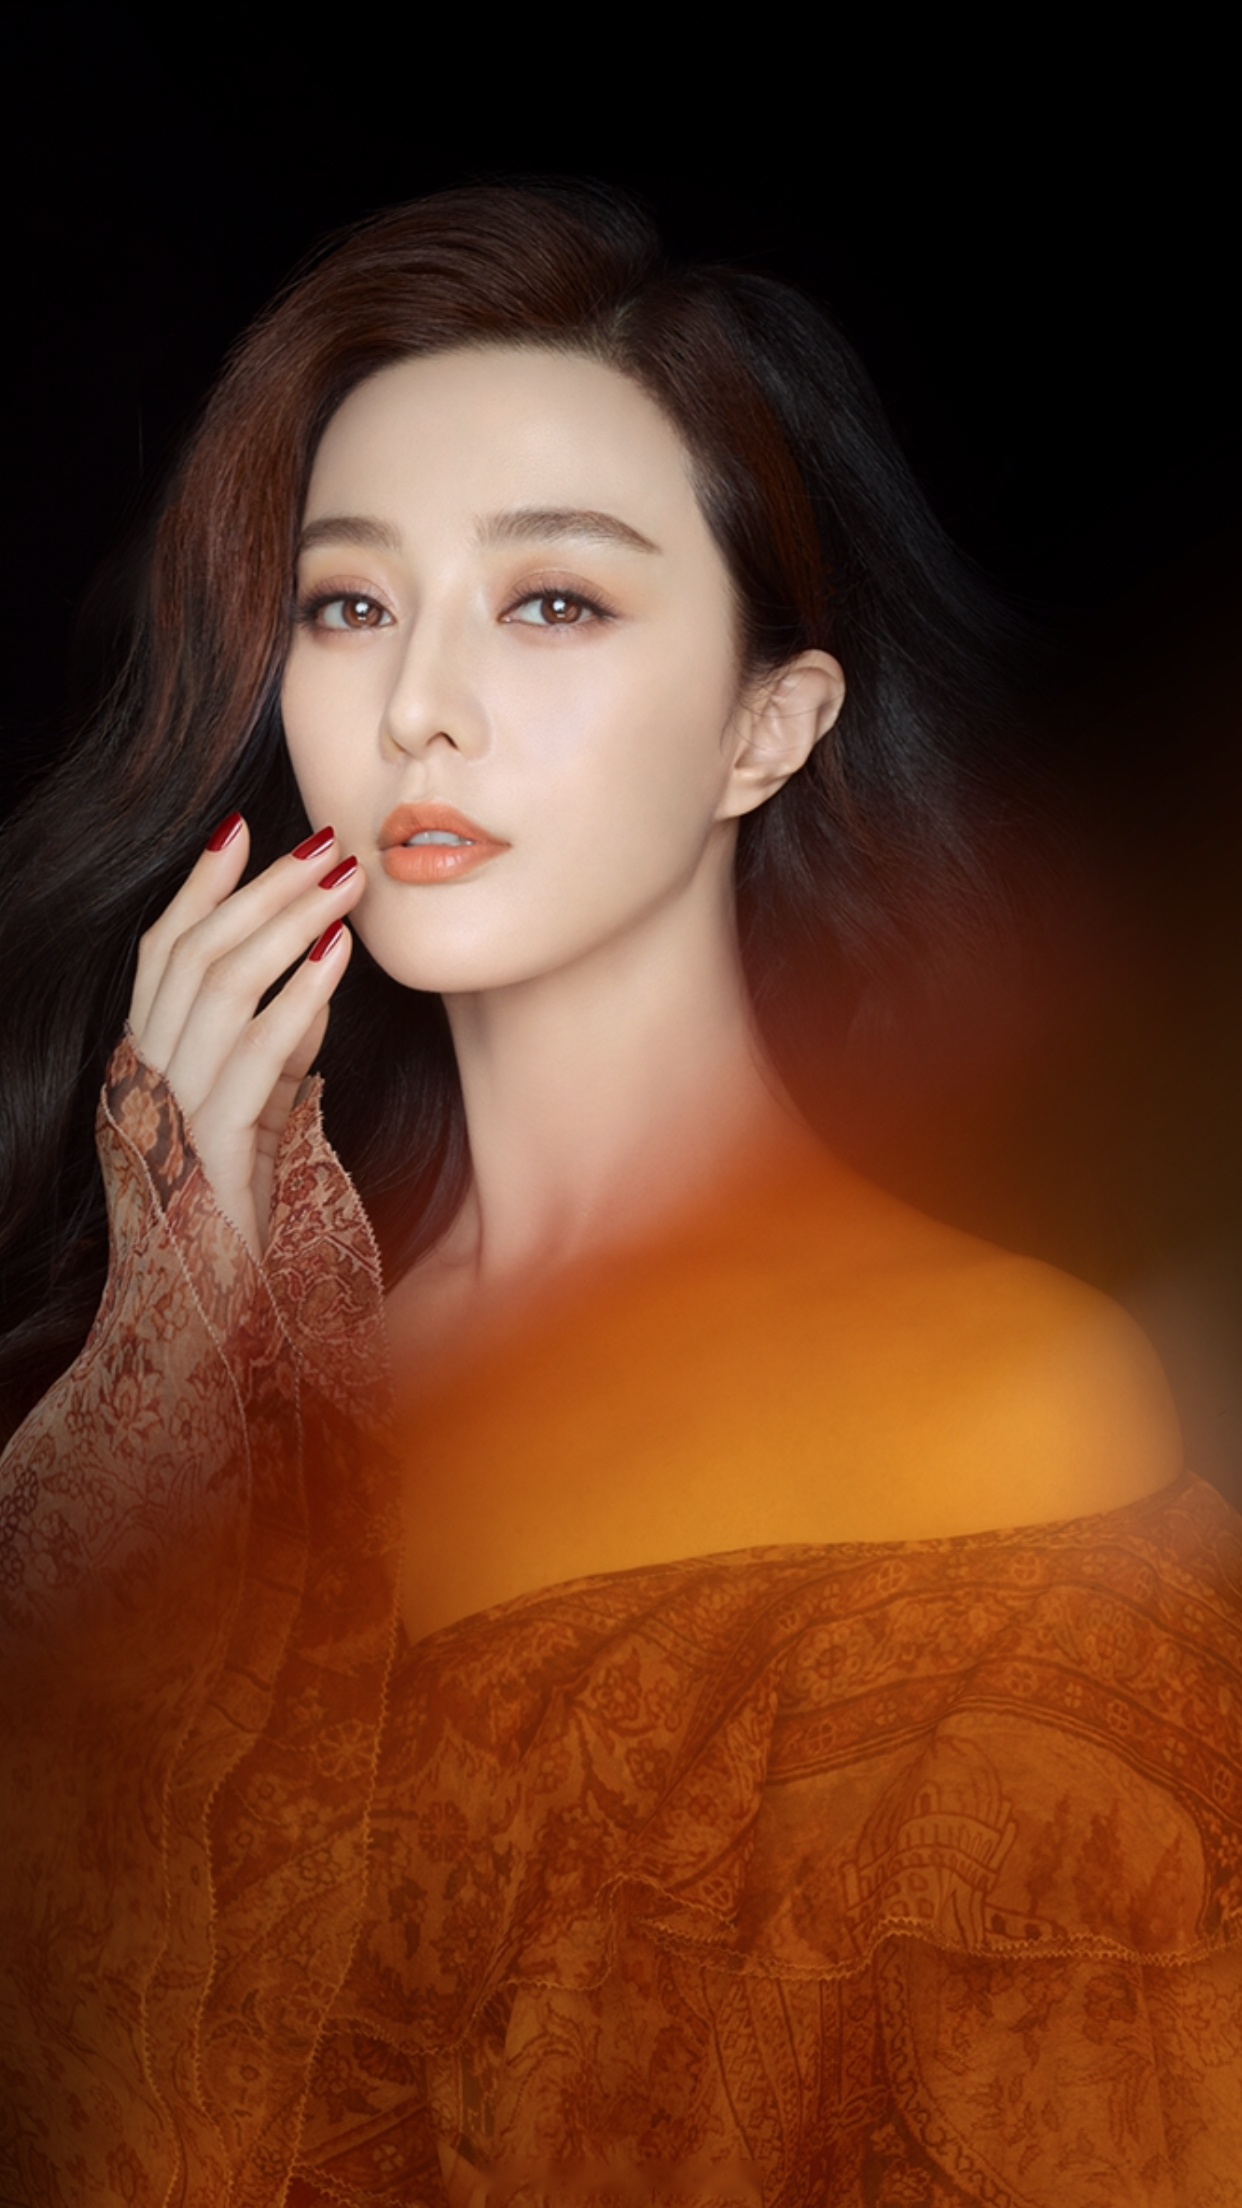 时尚女王范冰冰 优雅演绎知名美妆护肤品牌jayjun捷俊 最新一季广告